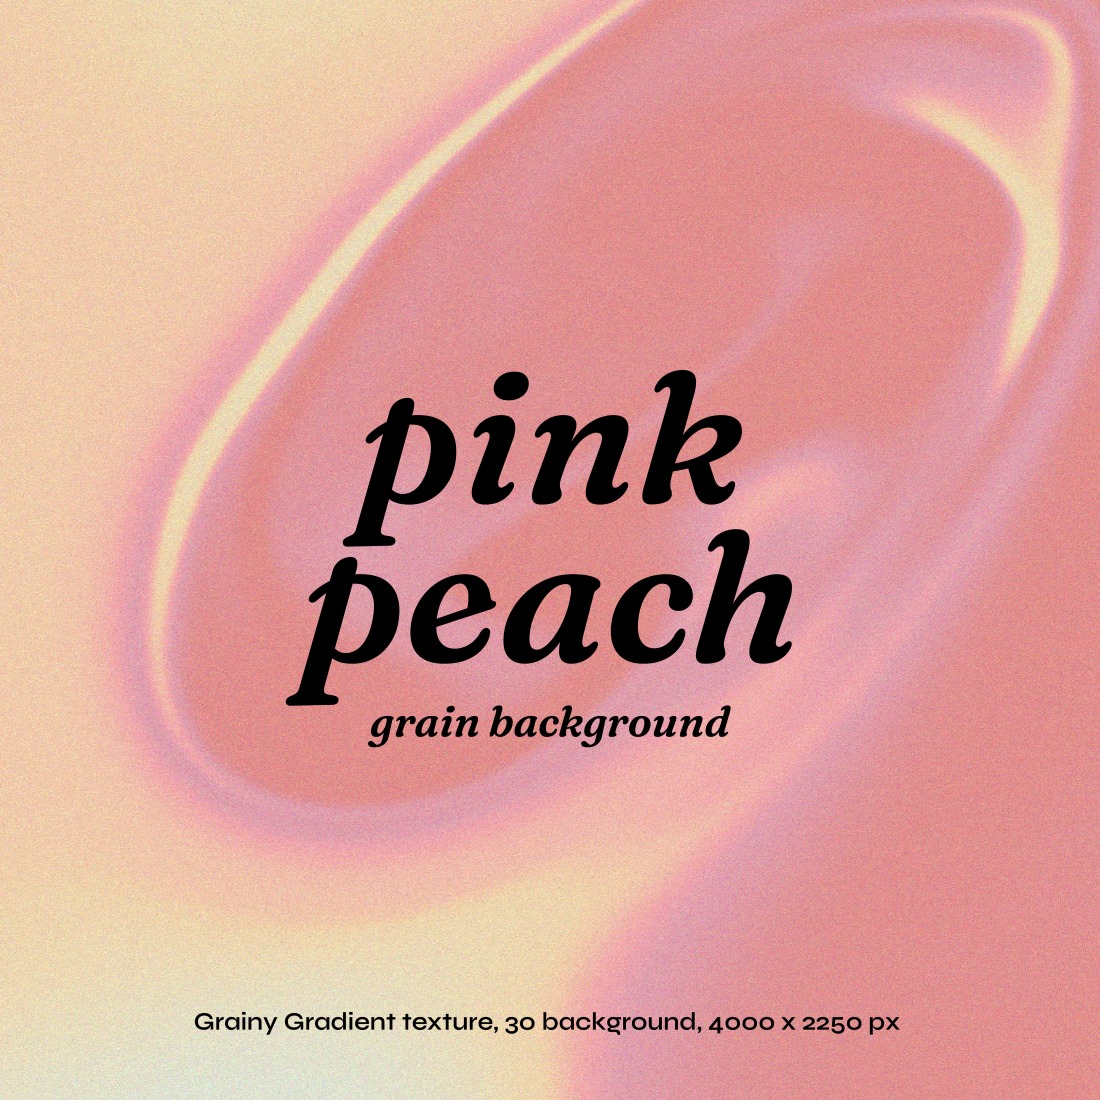 30 Pink peach grain texture background 4000x2250 pixel JPEG bundle set preview image.